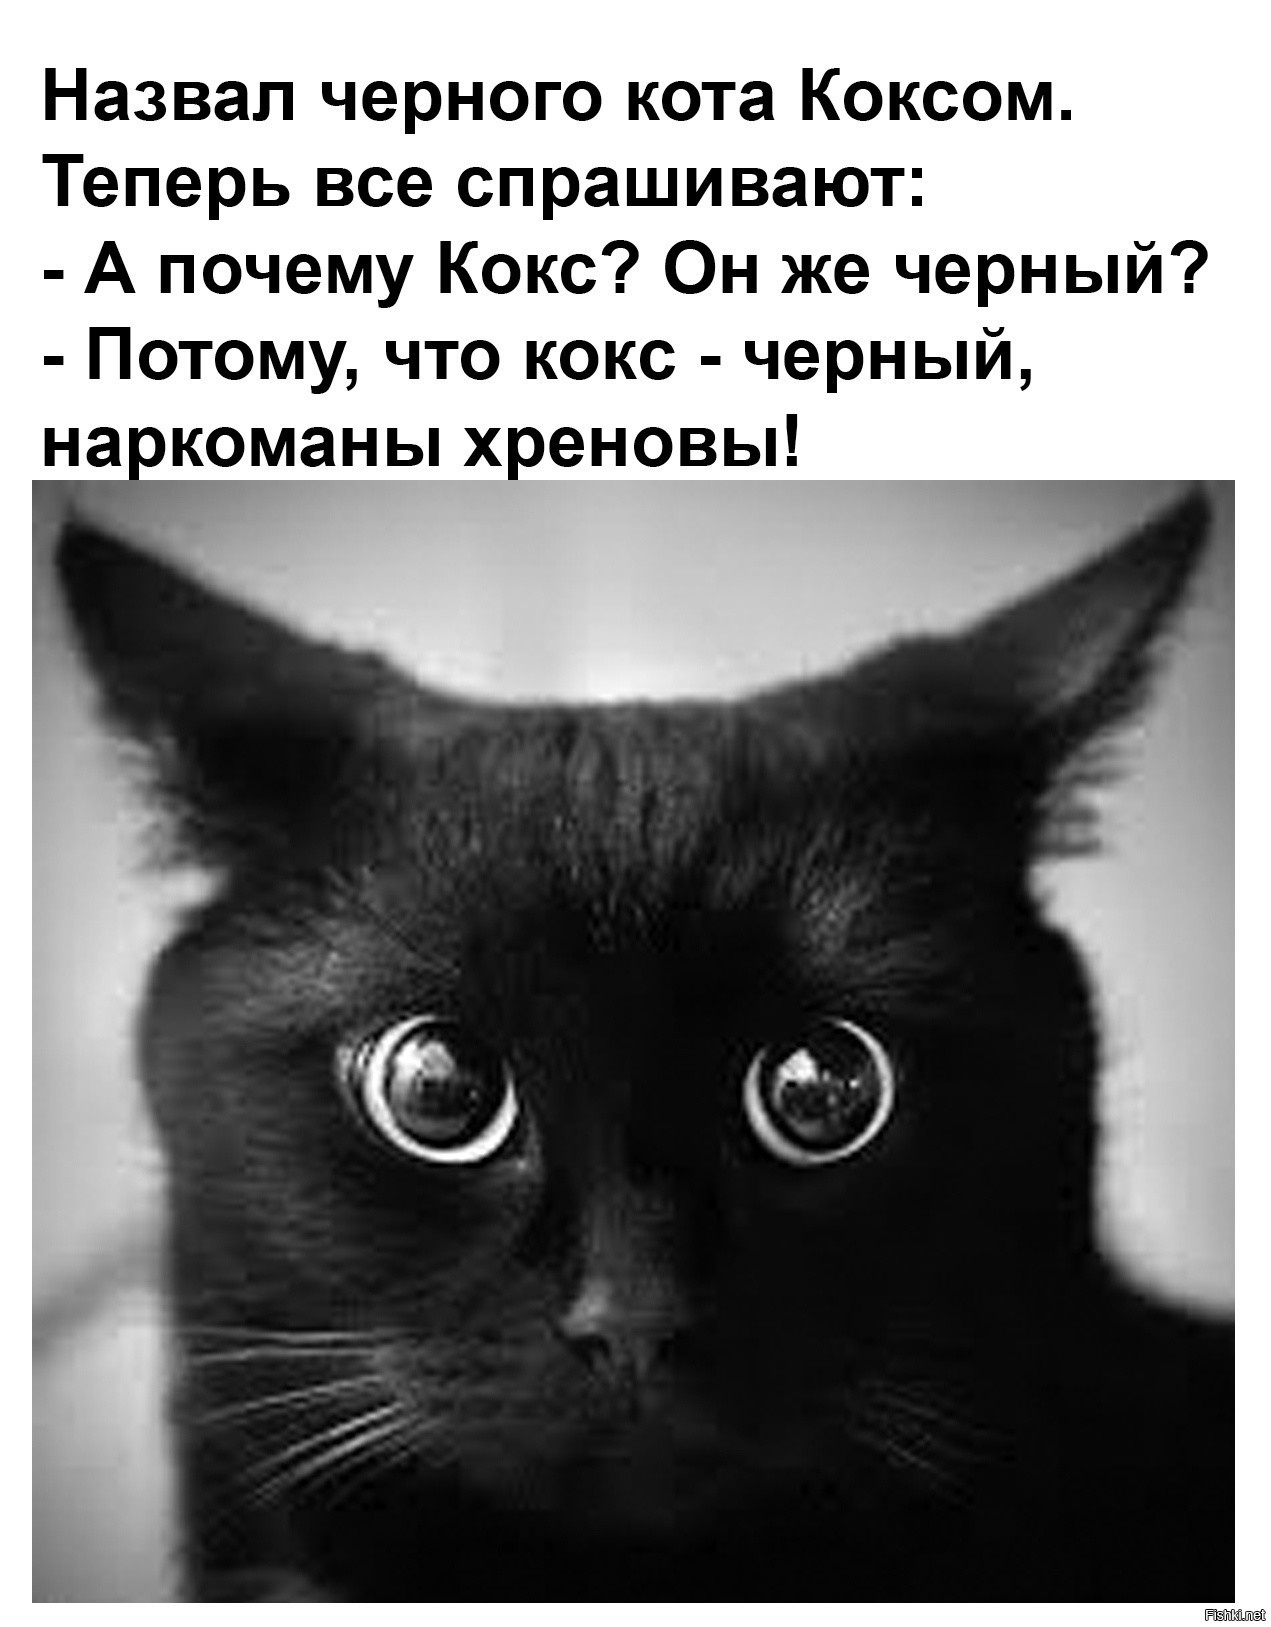 Включи кота называется. Чёрный кот. Фото кота. Назвал черного кота коксом. Кличка для черного кота.